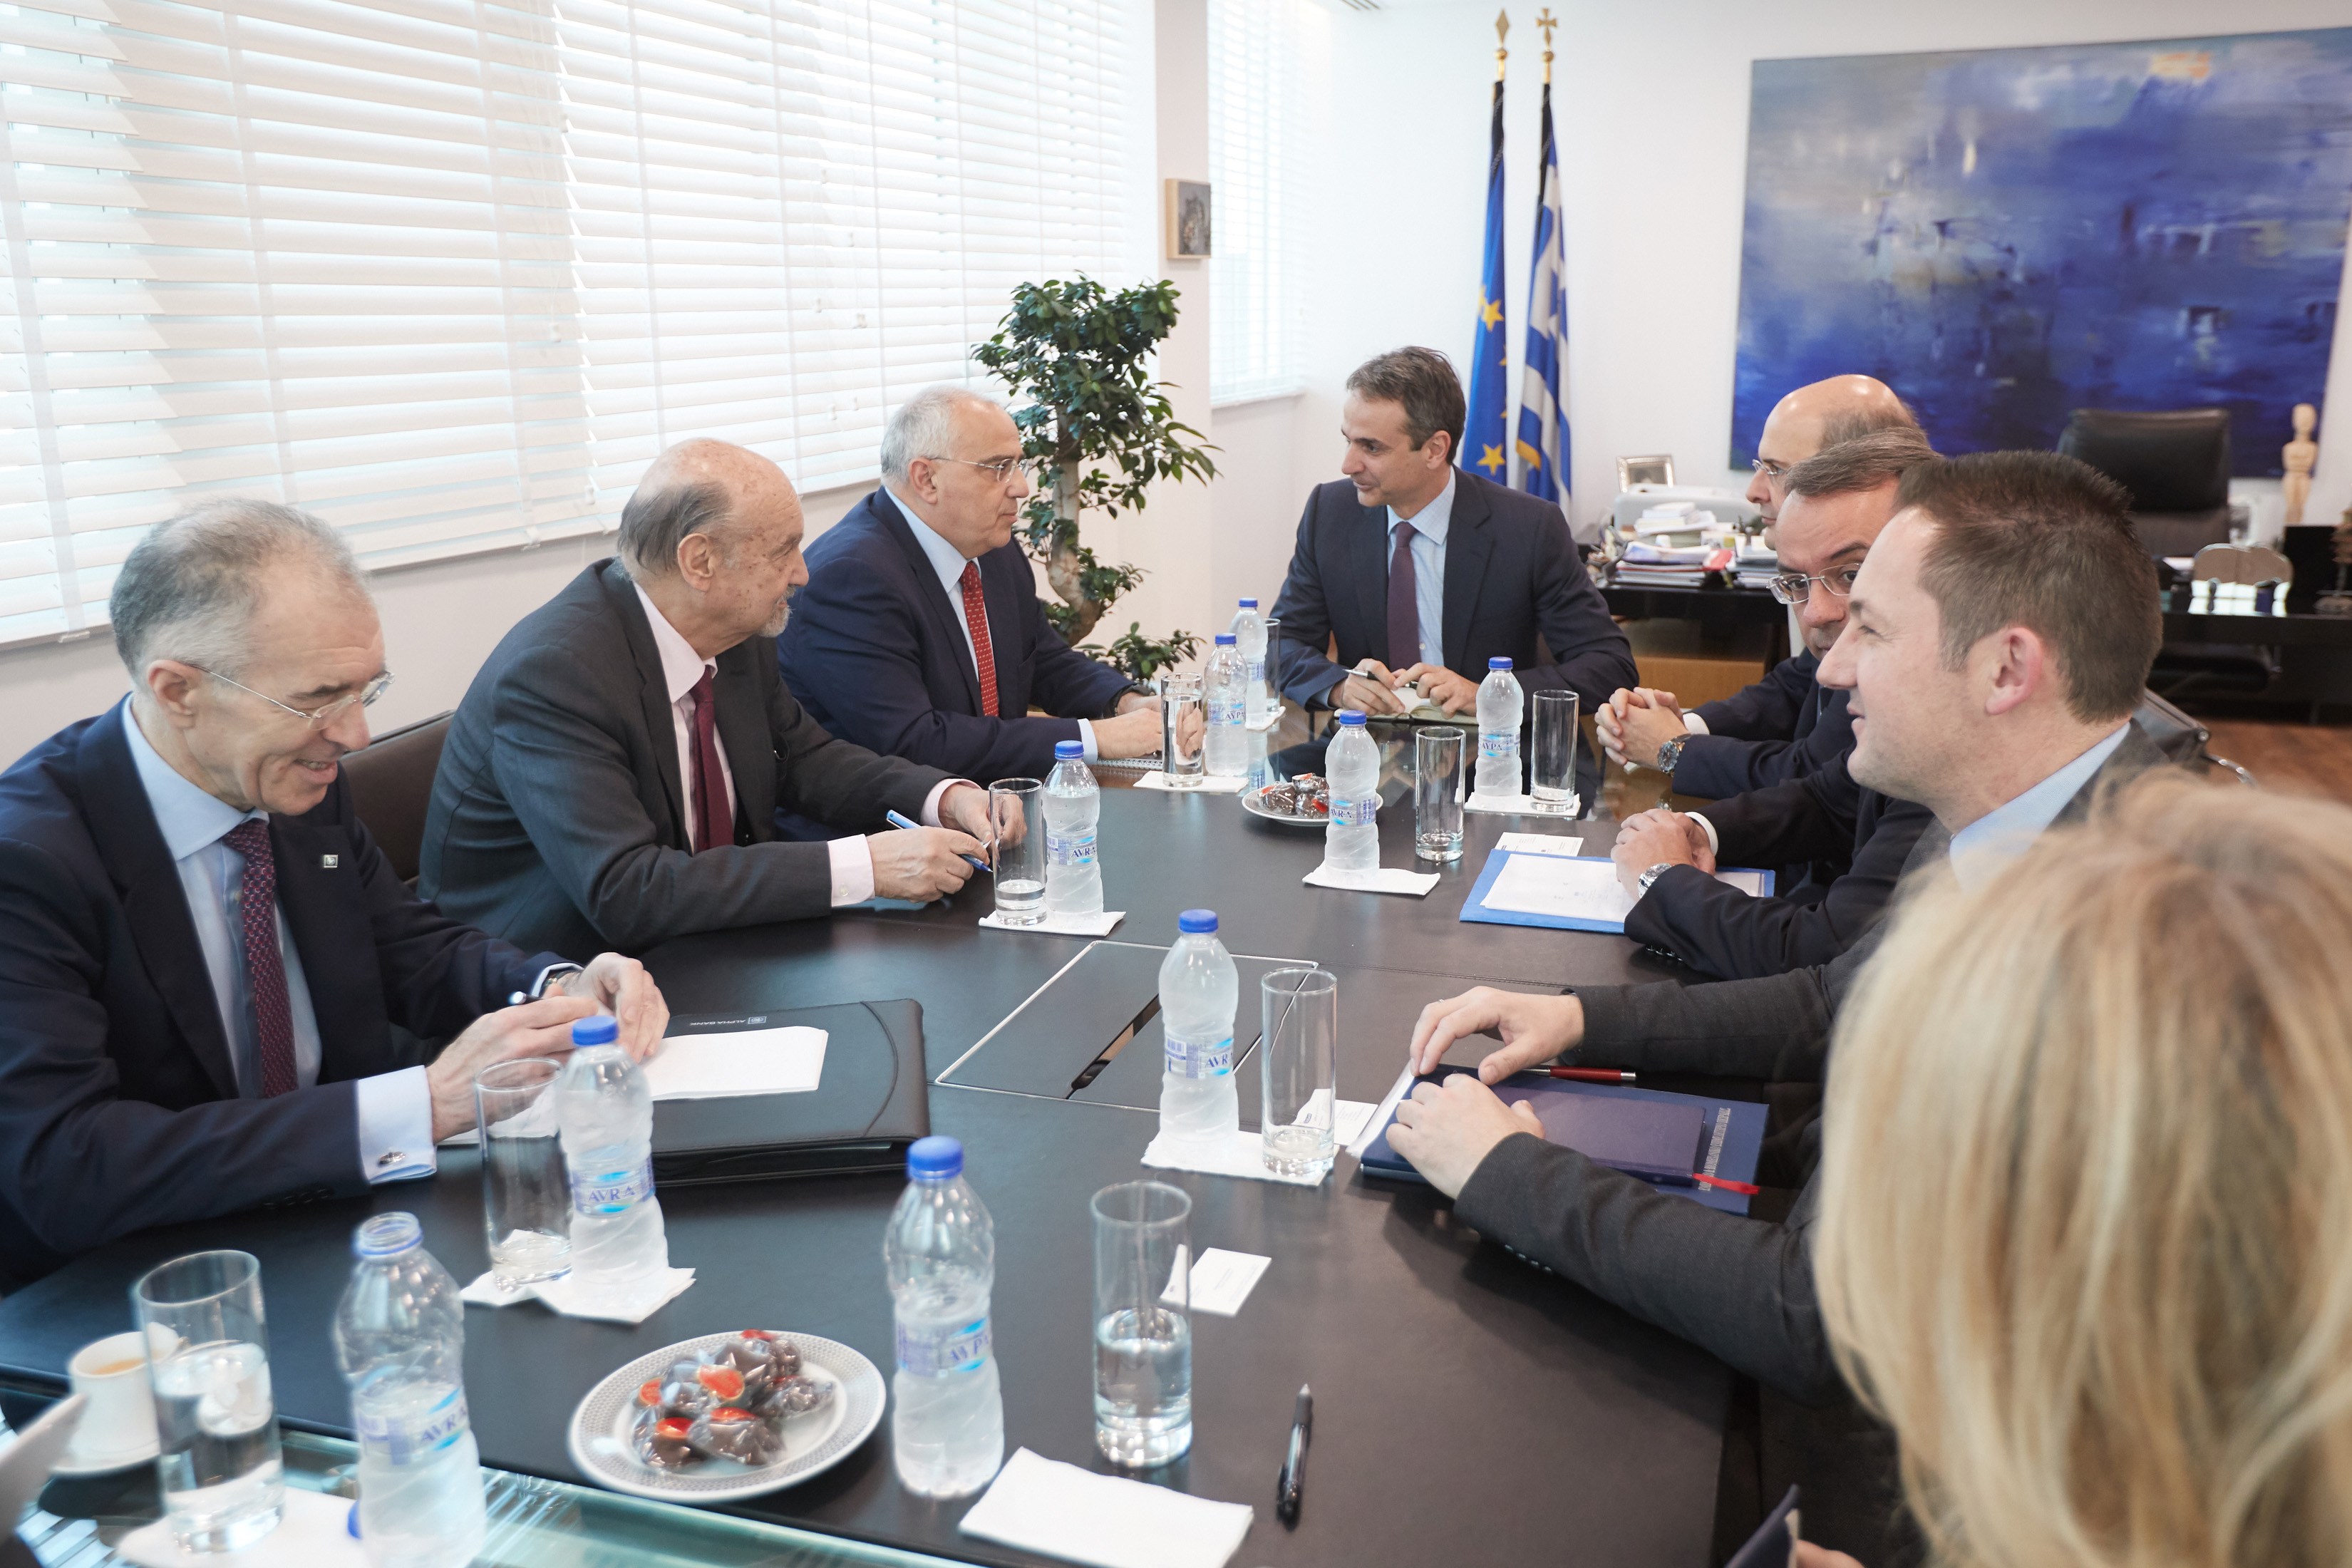 Συνάντηση με τους εκπροσώπους της Ελληνικής Ένωσης Τραπεζών είχε το πρωί ο Κυριάκος Μητσοτάκης